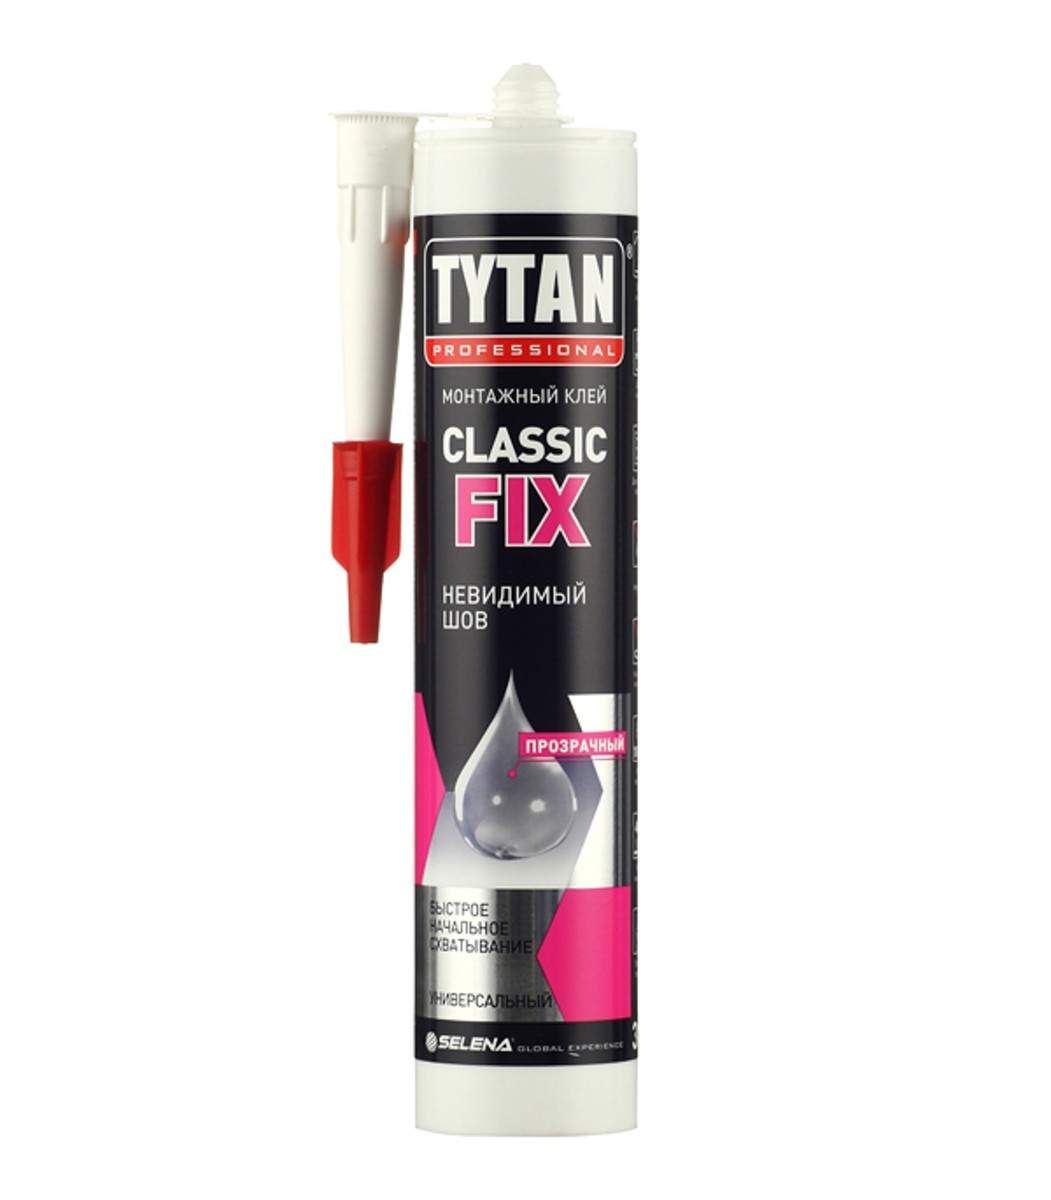 Tytan fix прозрачный. Клей монтажный каучуковый Tytan Classic Fix прозрачный 310 мл. Жидкие гвозди Tytan Classic Fix 310 мл. Tytan professional клей монтажный Classic Fix, прозрачный, 310 мл. Клей монтажный Титан Classic Fix.